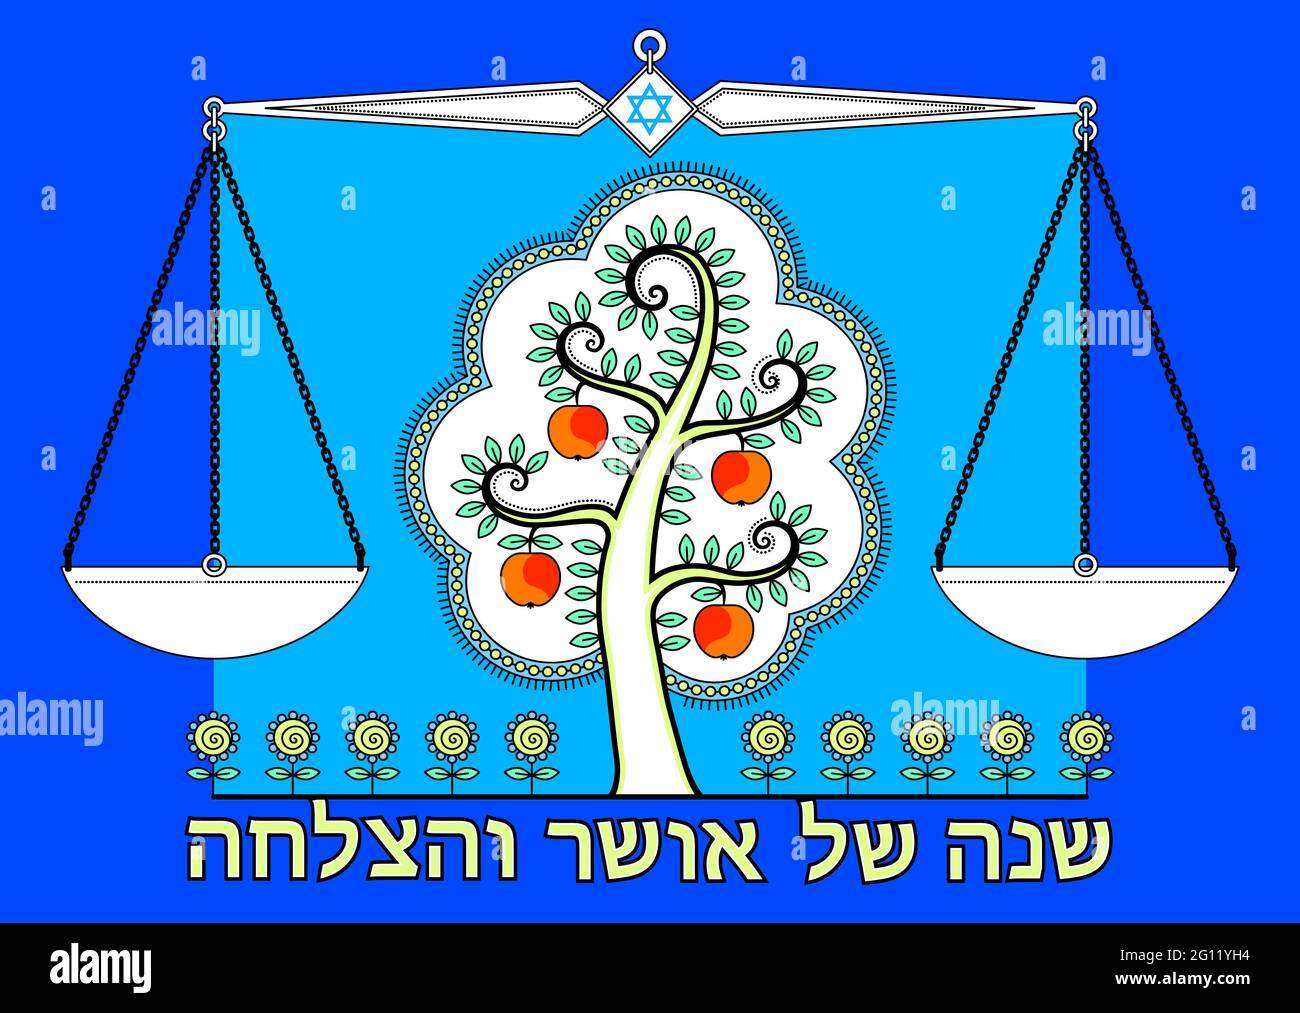 Grußkarte „Happy Jewish New Year“ (Rosh Hashanah). Traditioneller Wunsch: Glück und Glück im neuen Jahr. Blaue Farbe. Stock Vektor